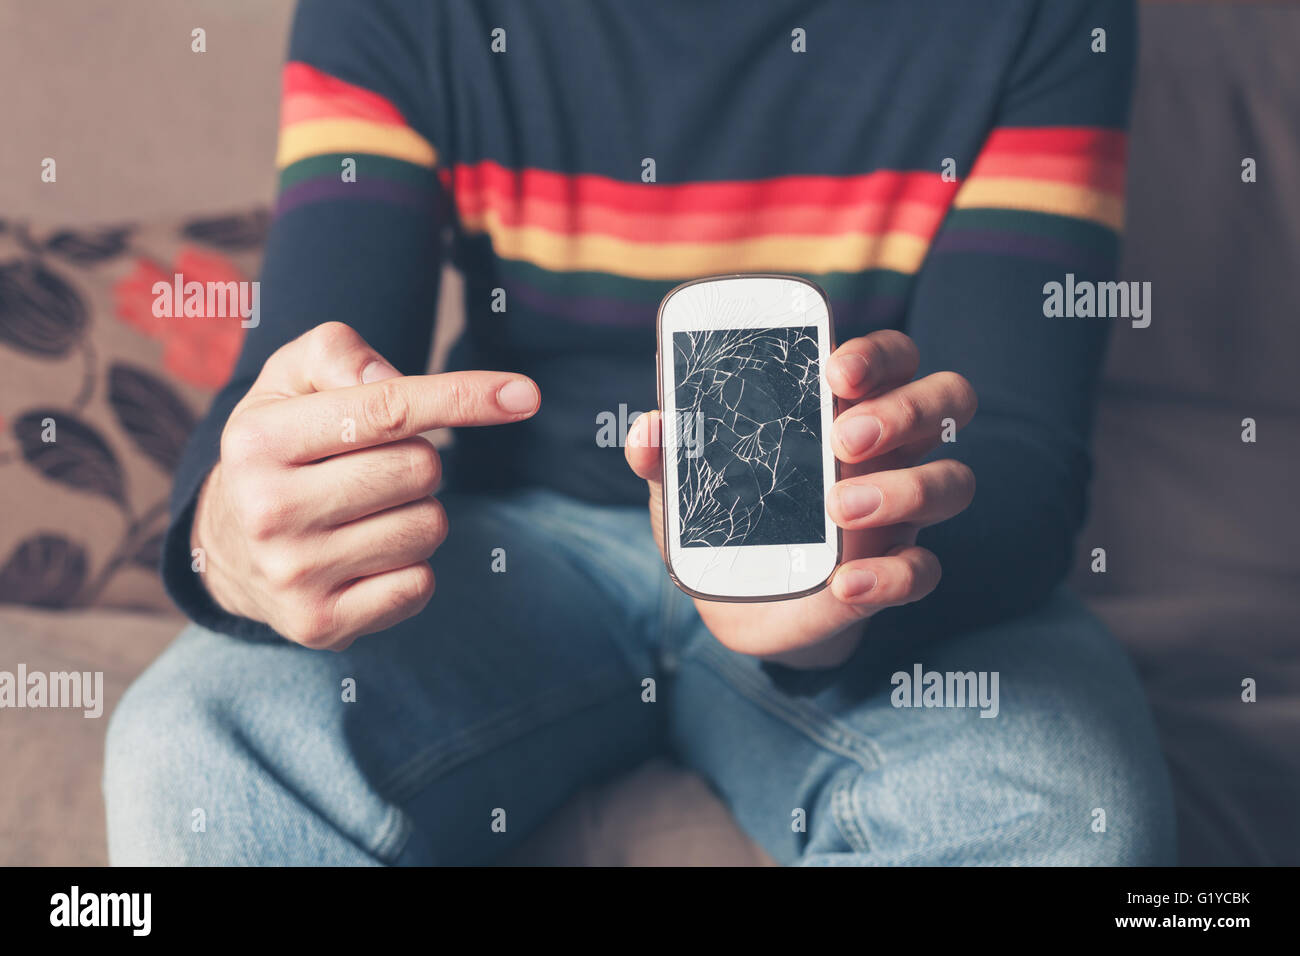 Un giovane uomo è seduto su un divano ed è rivolto a una rotta smart phone con schermo rotto Foto Stock